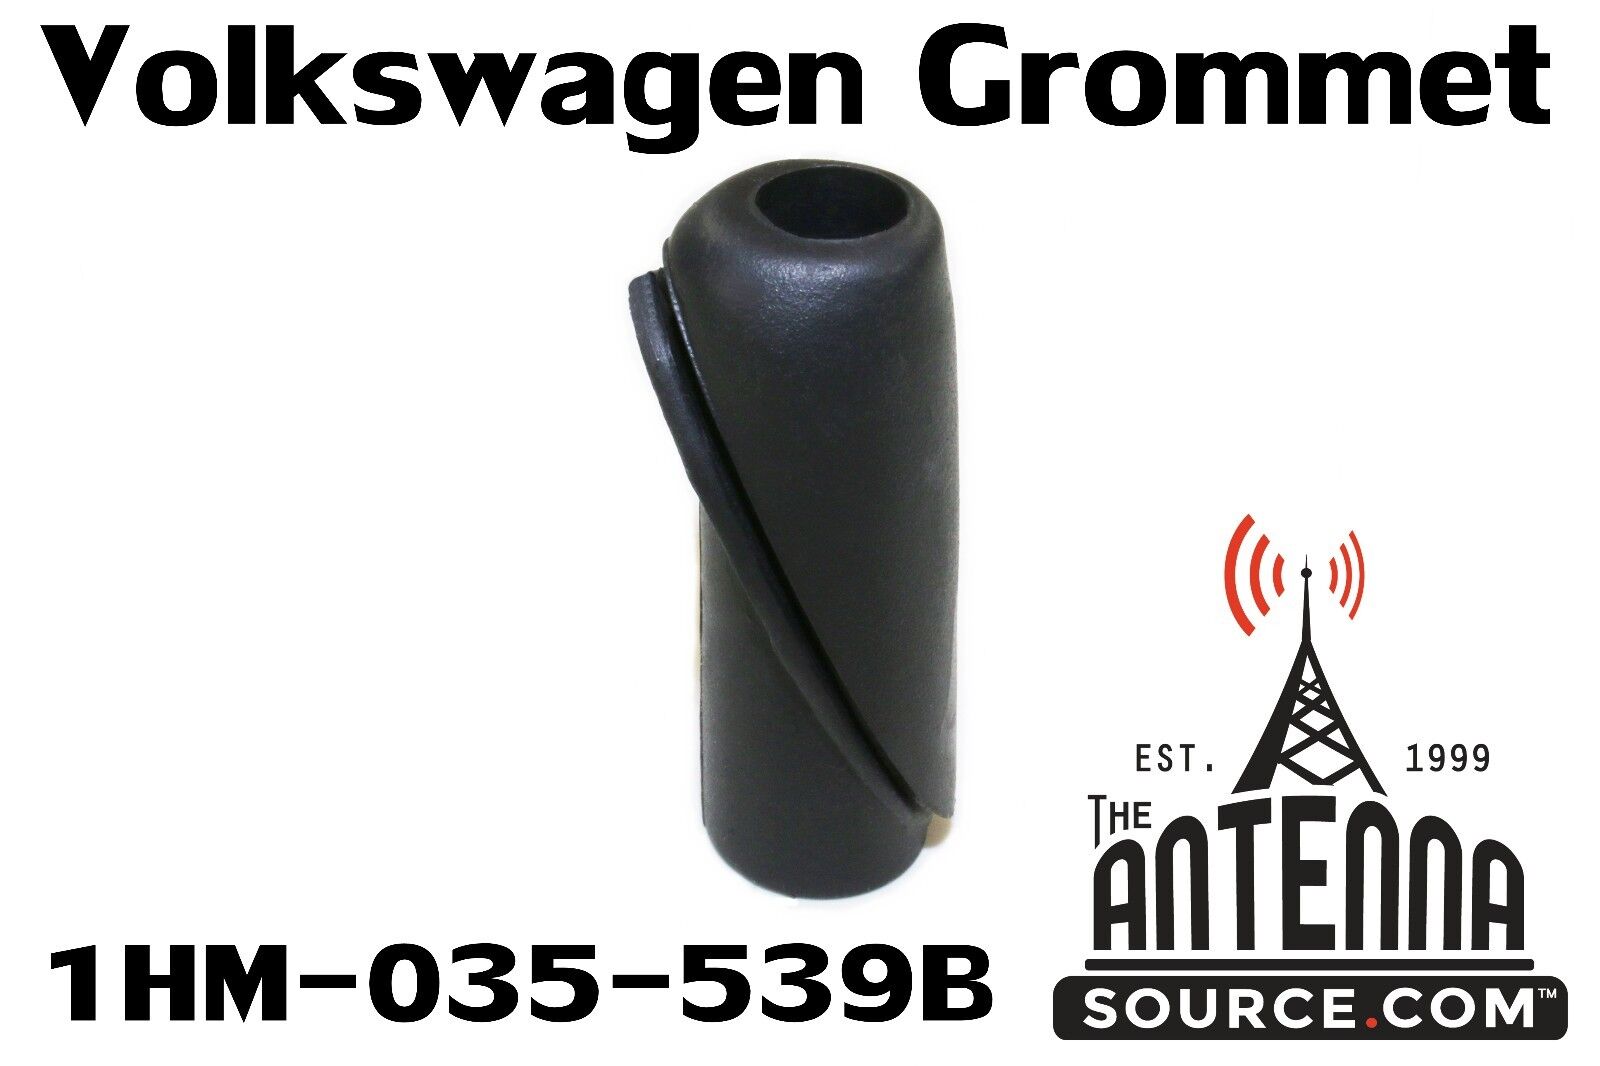 Antenna Grommet for Volkswagen Cabrio, Golf, Jetta (93-02) - Part # 1HM-035-539B